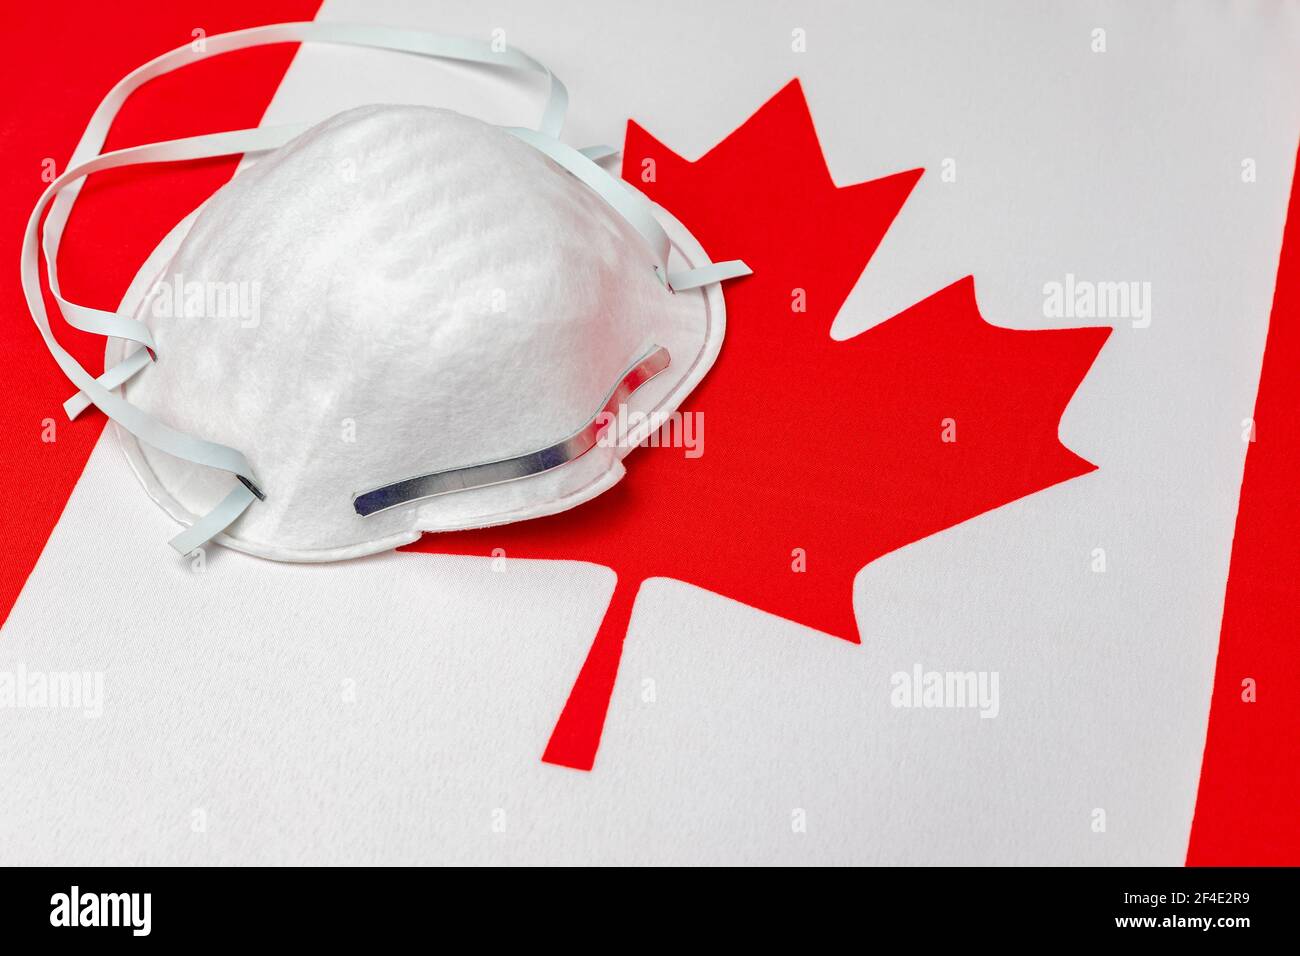 Bandiera Canada e maschera facciale N95. Concetto di Covid-19 coronavirus blocco, divieto di viaggio e crisi sanitaria Foto Stock